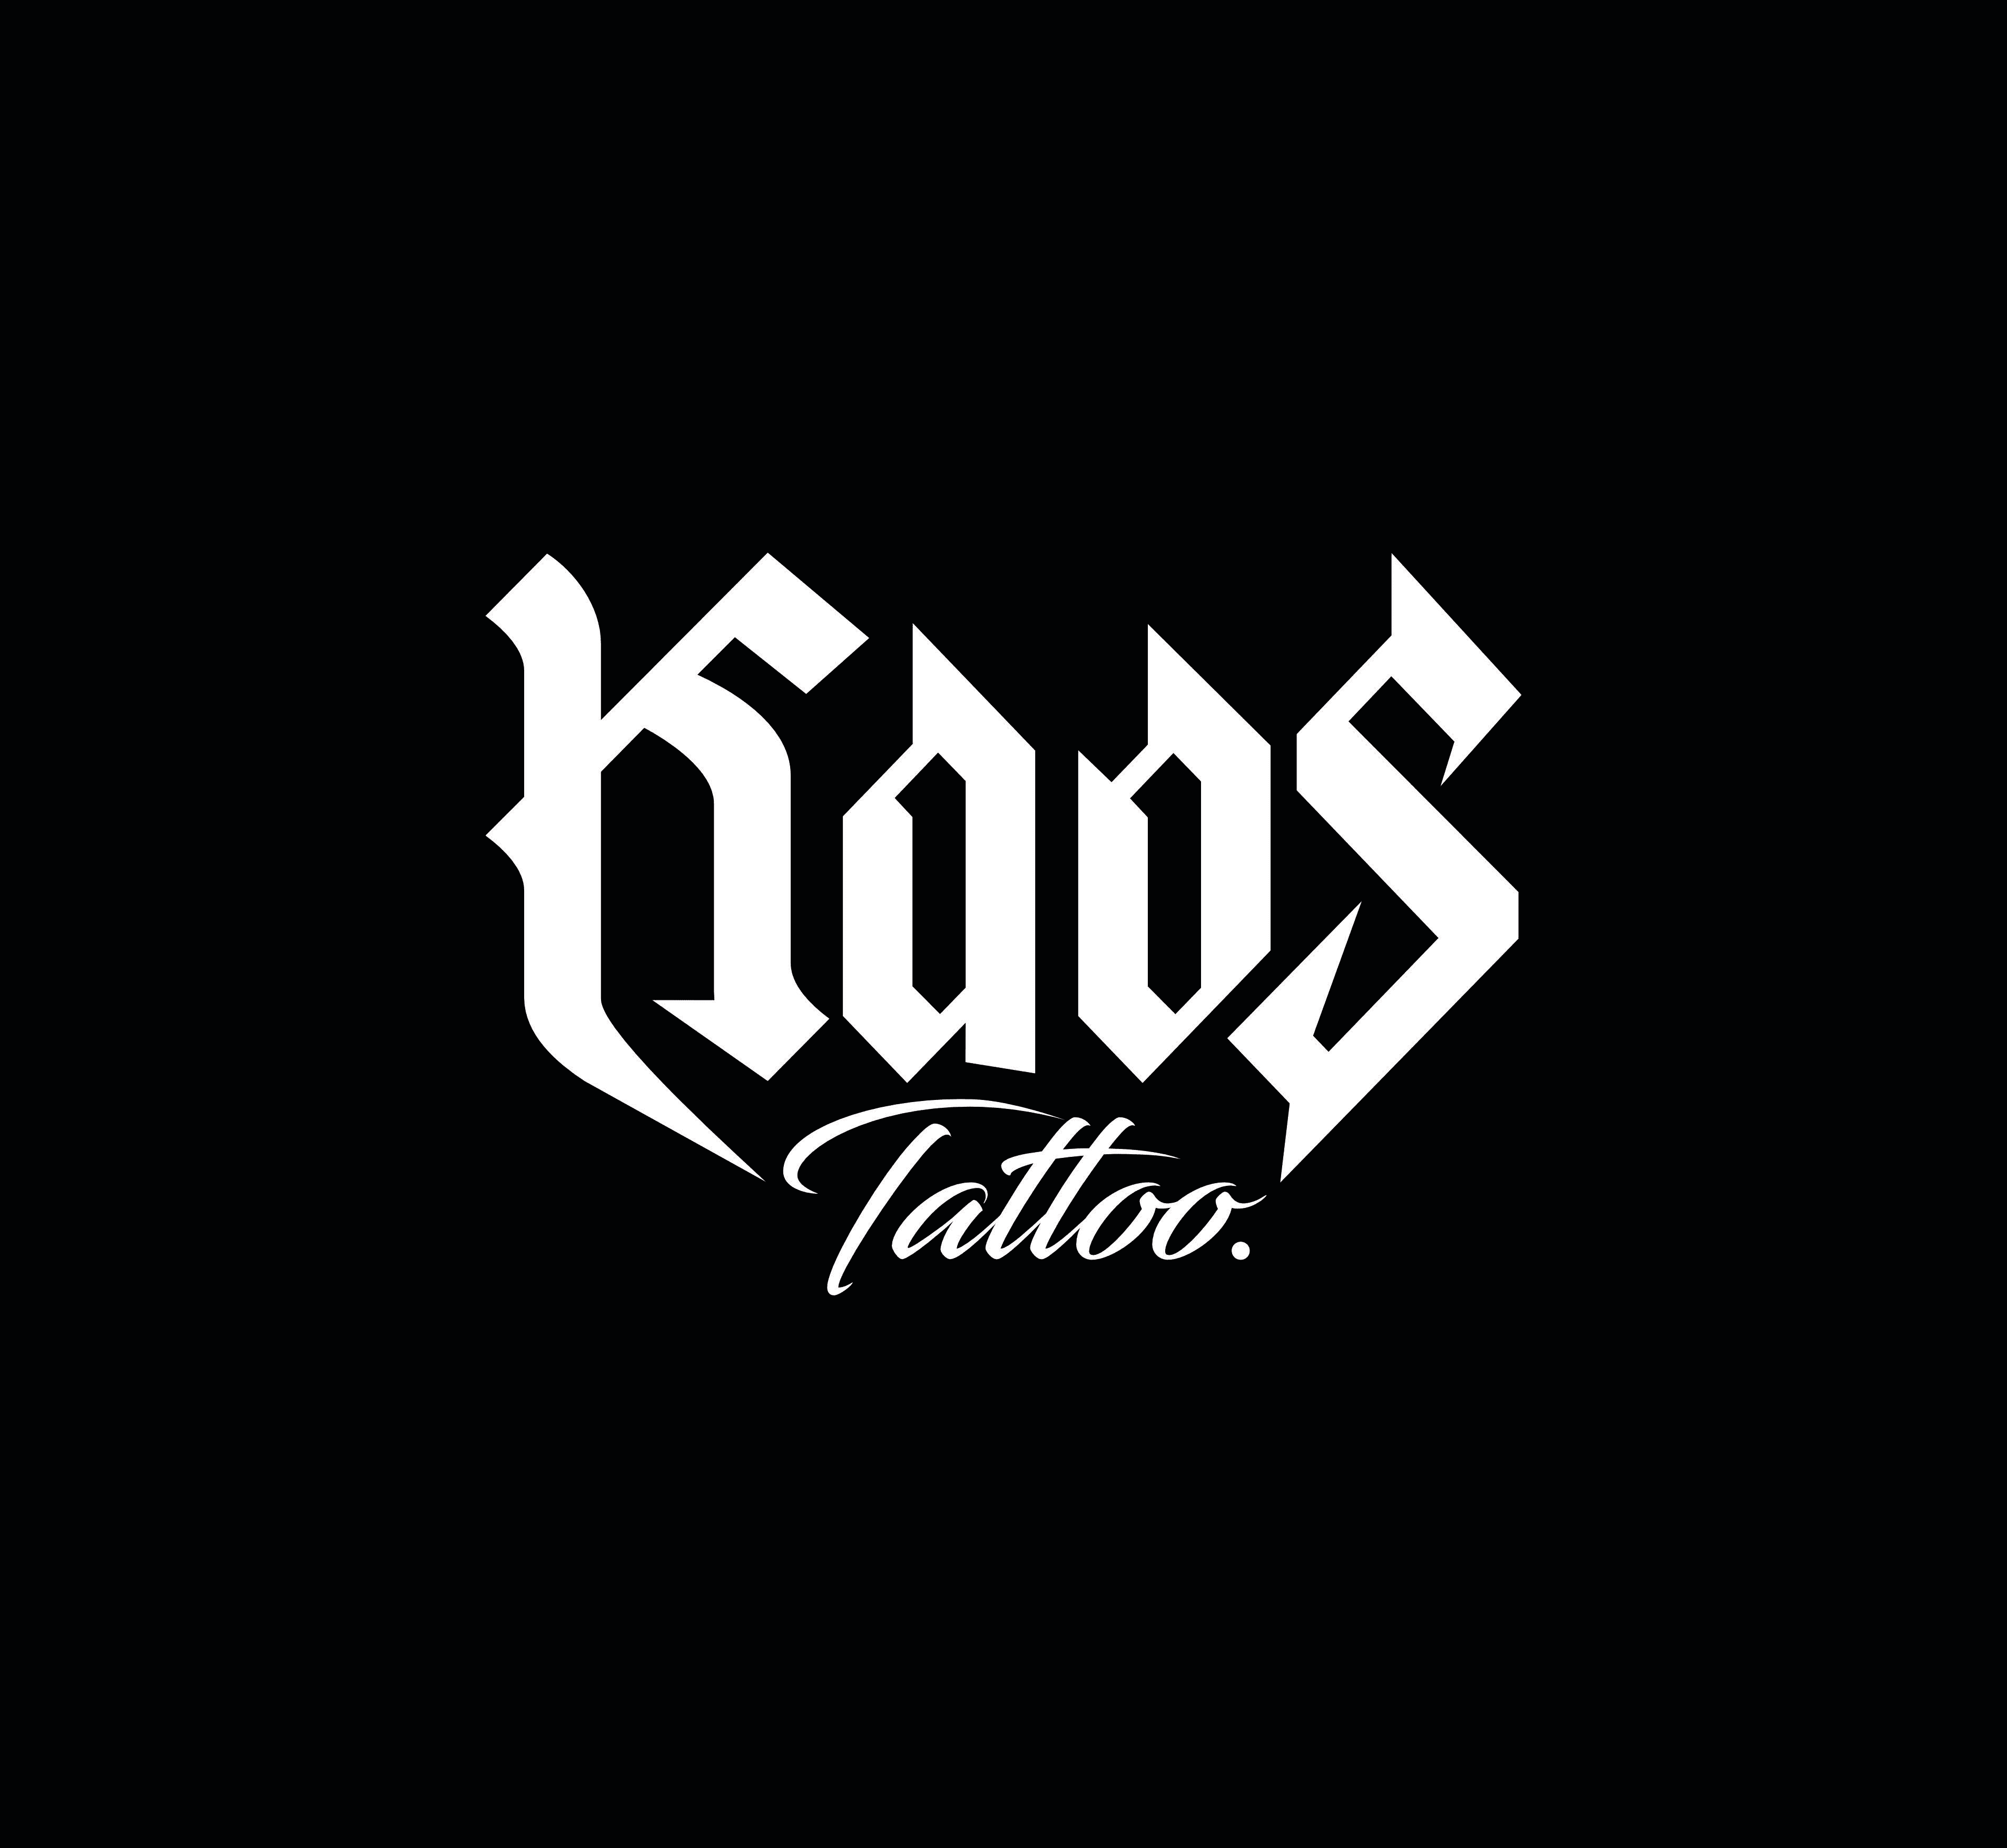 kaos tattoo • Tattoo Studio • Tattoodo